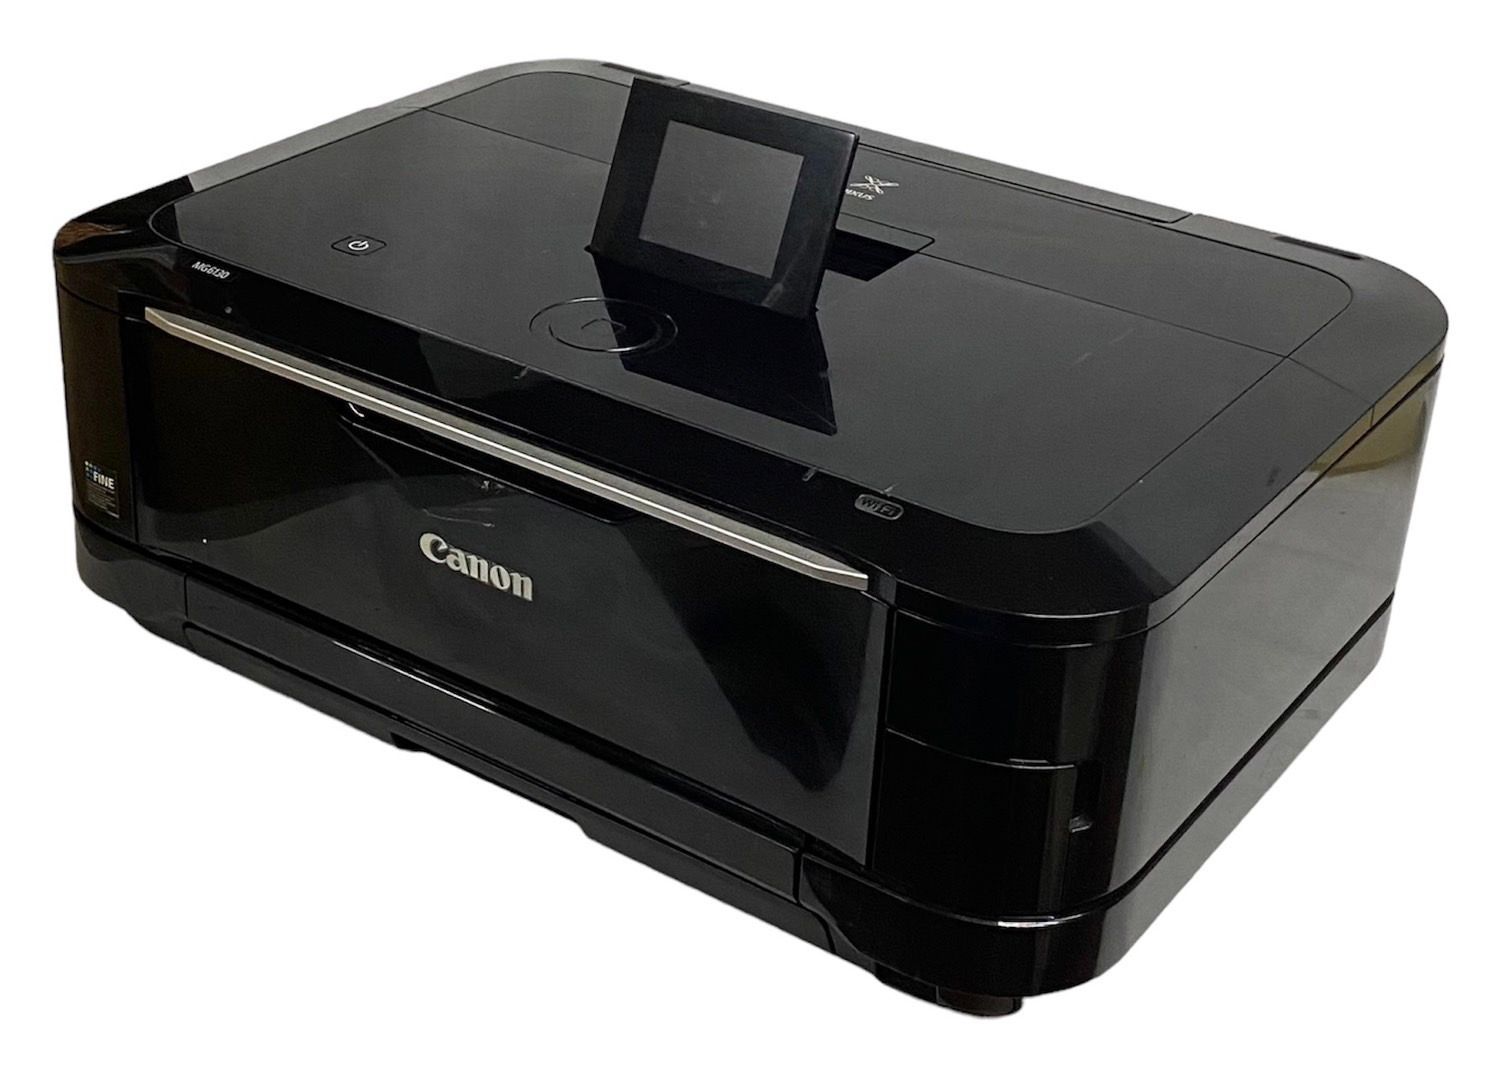 Canonプリンター PIXUS MG6130 レーベル印刷 複合機 - 家具